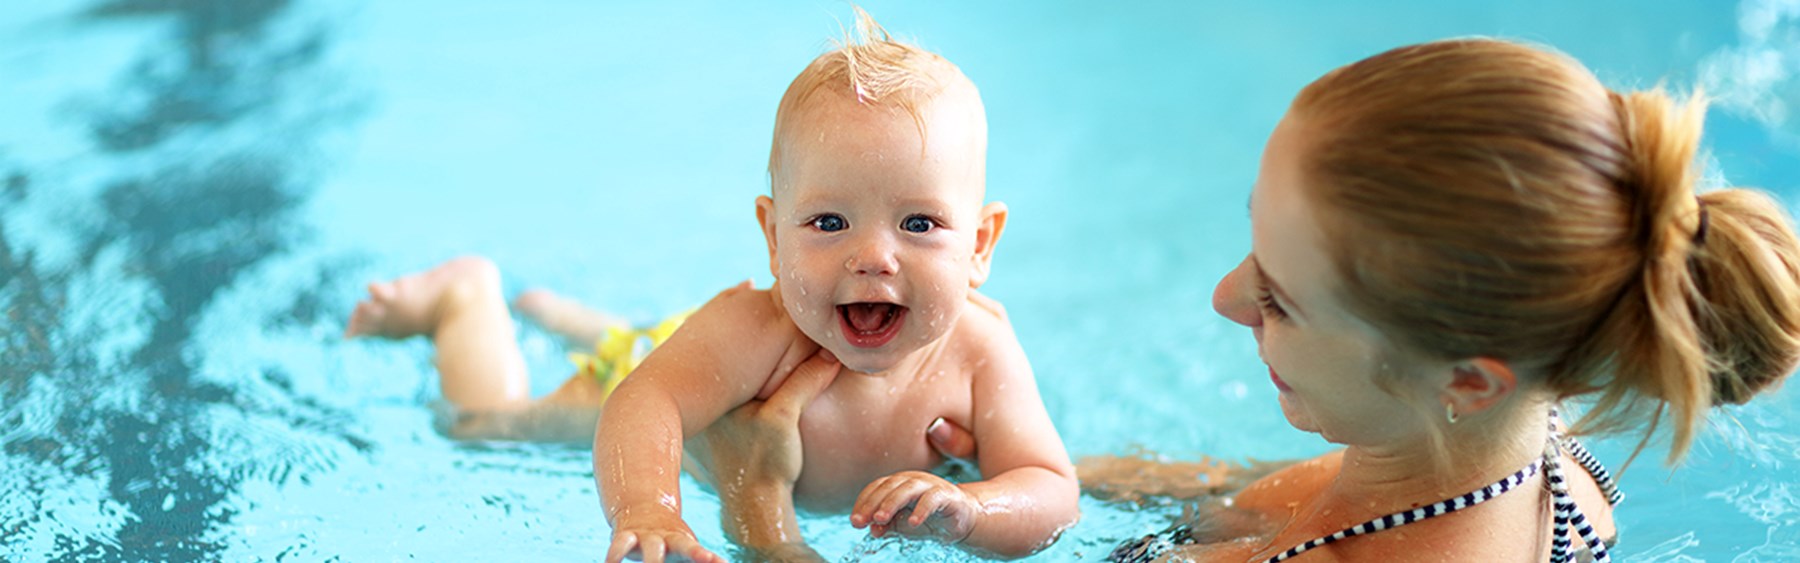 Decode velordnet daytime Når du kommer med baby eller barn op til 3 år - Roskilde Badet